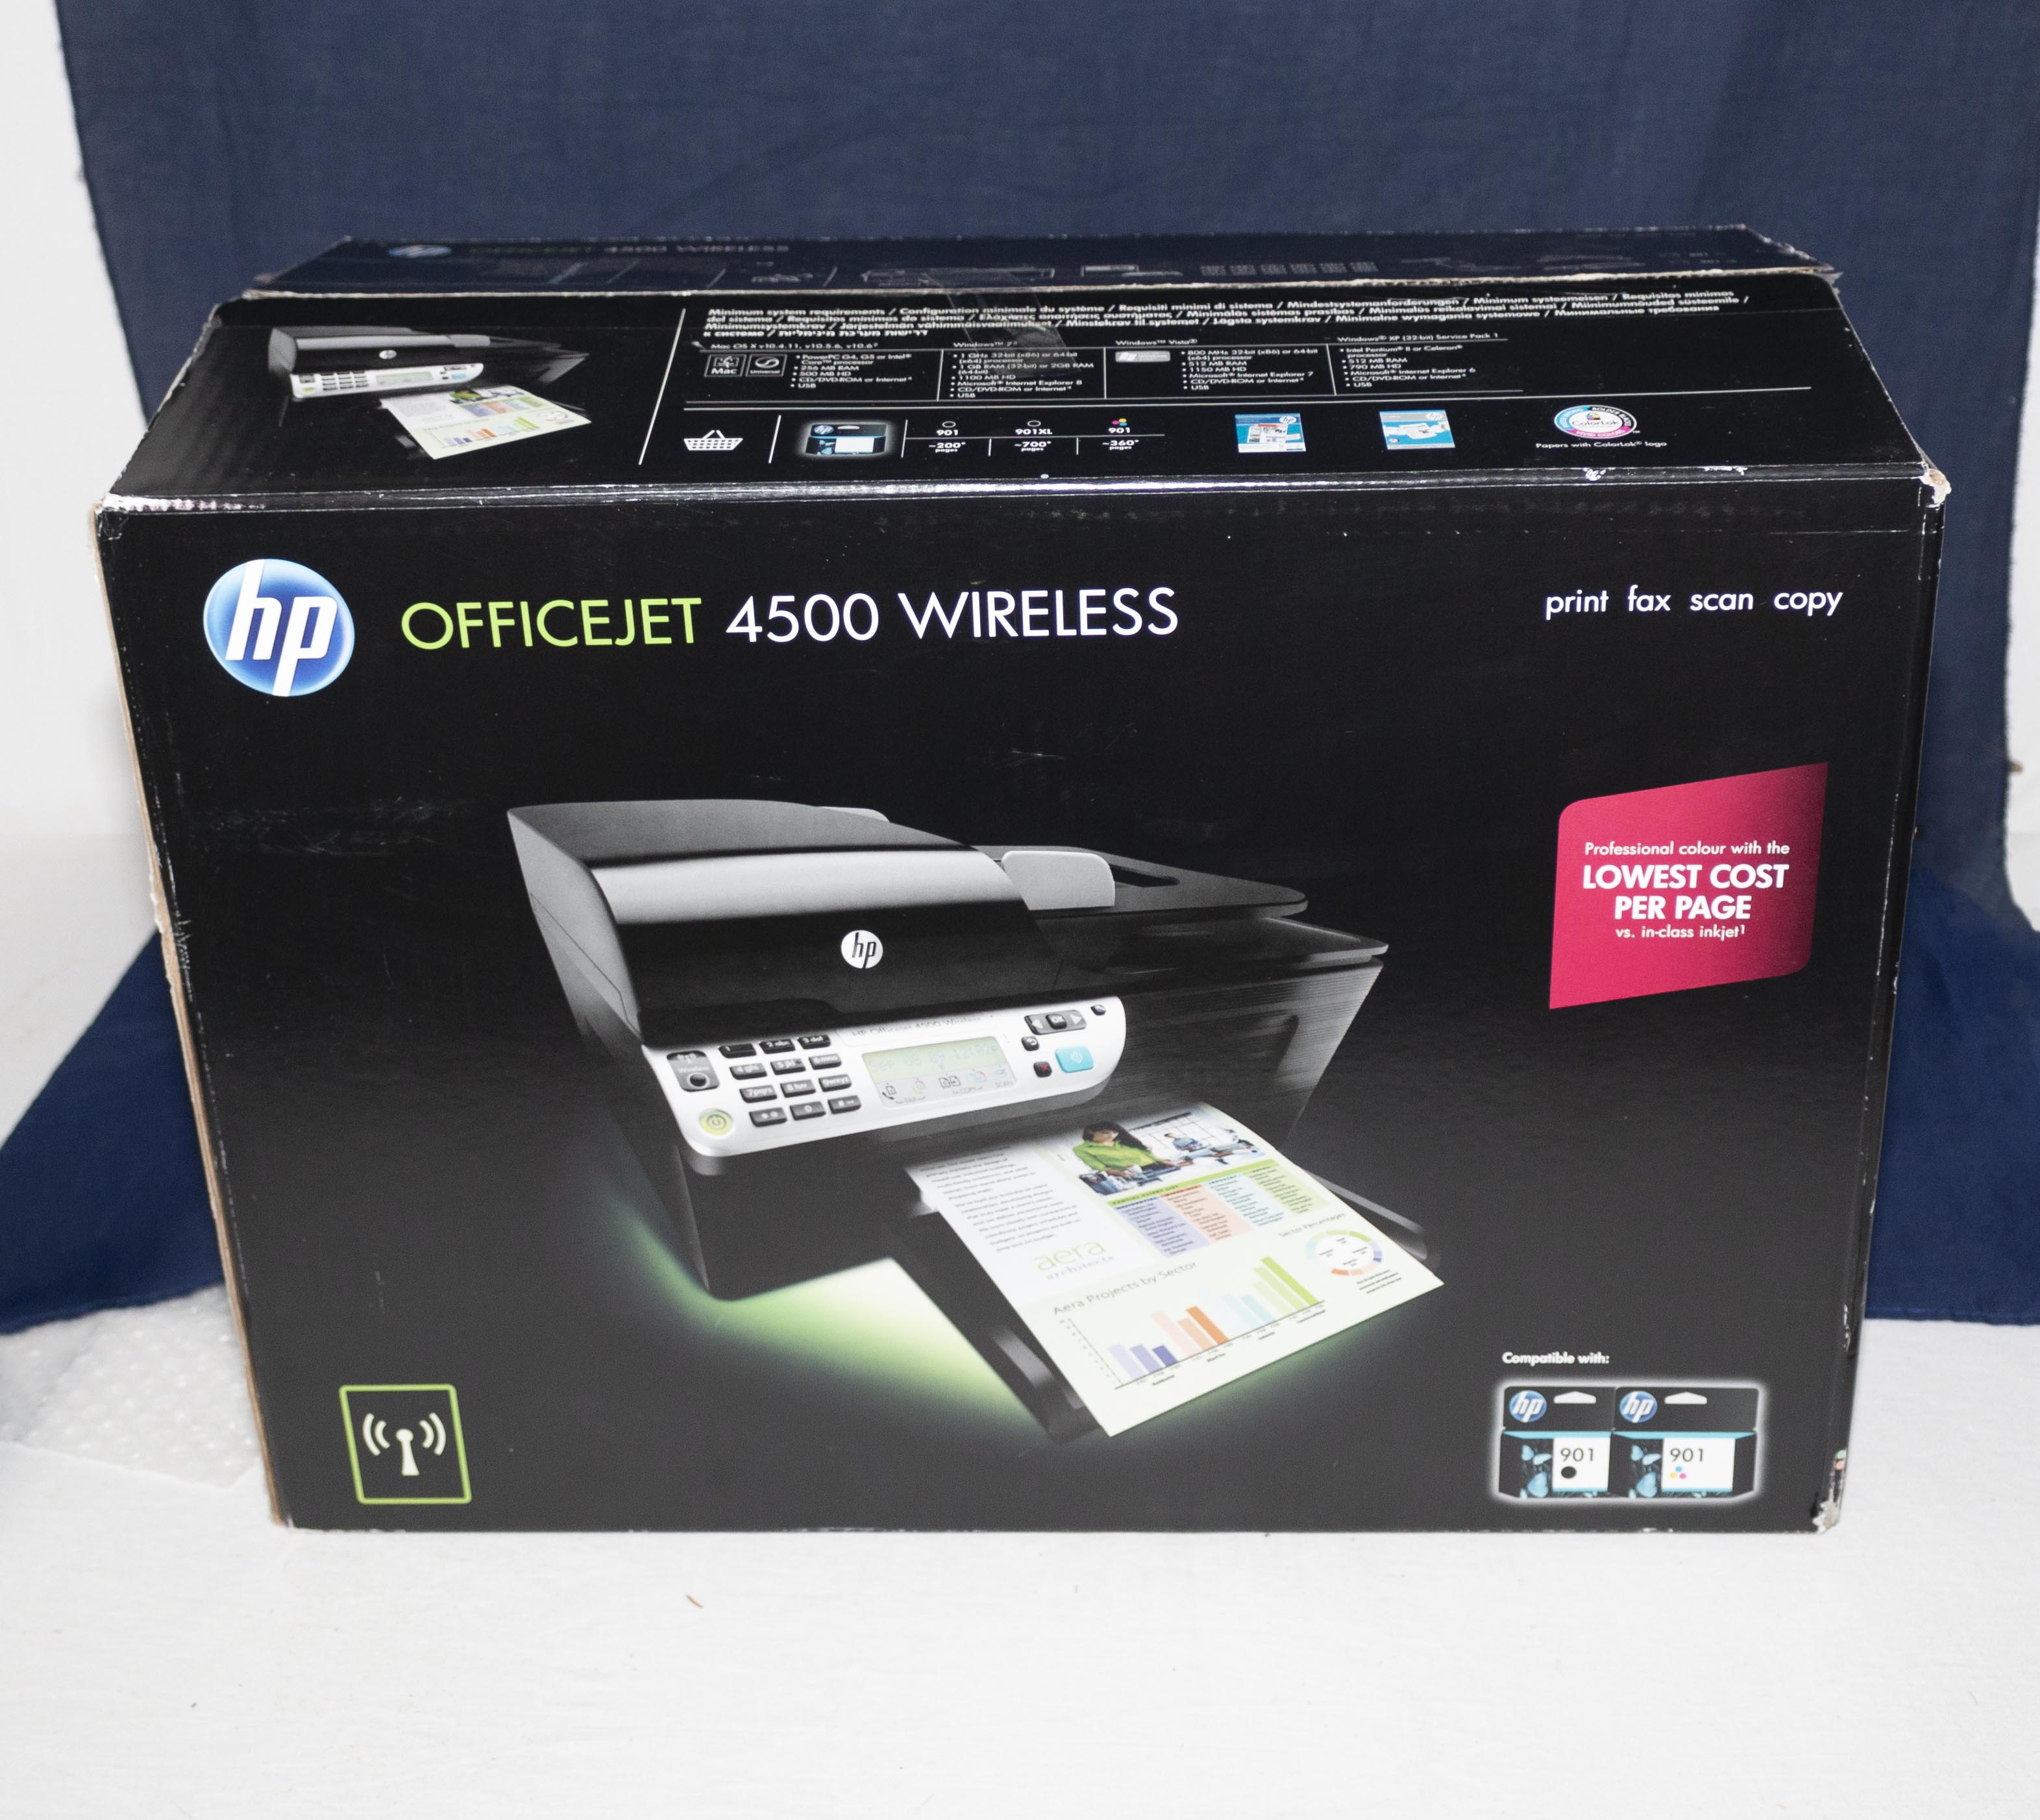 An Officejet 4500 wireless printer